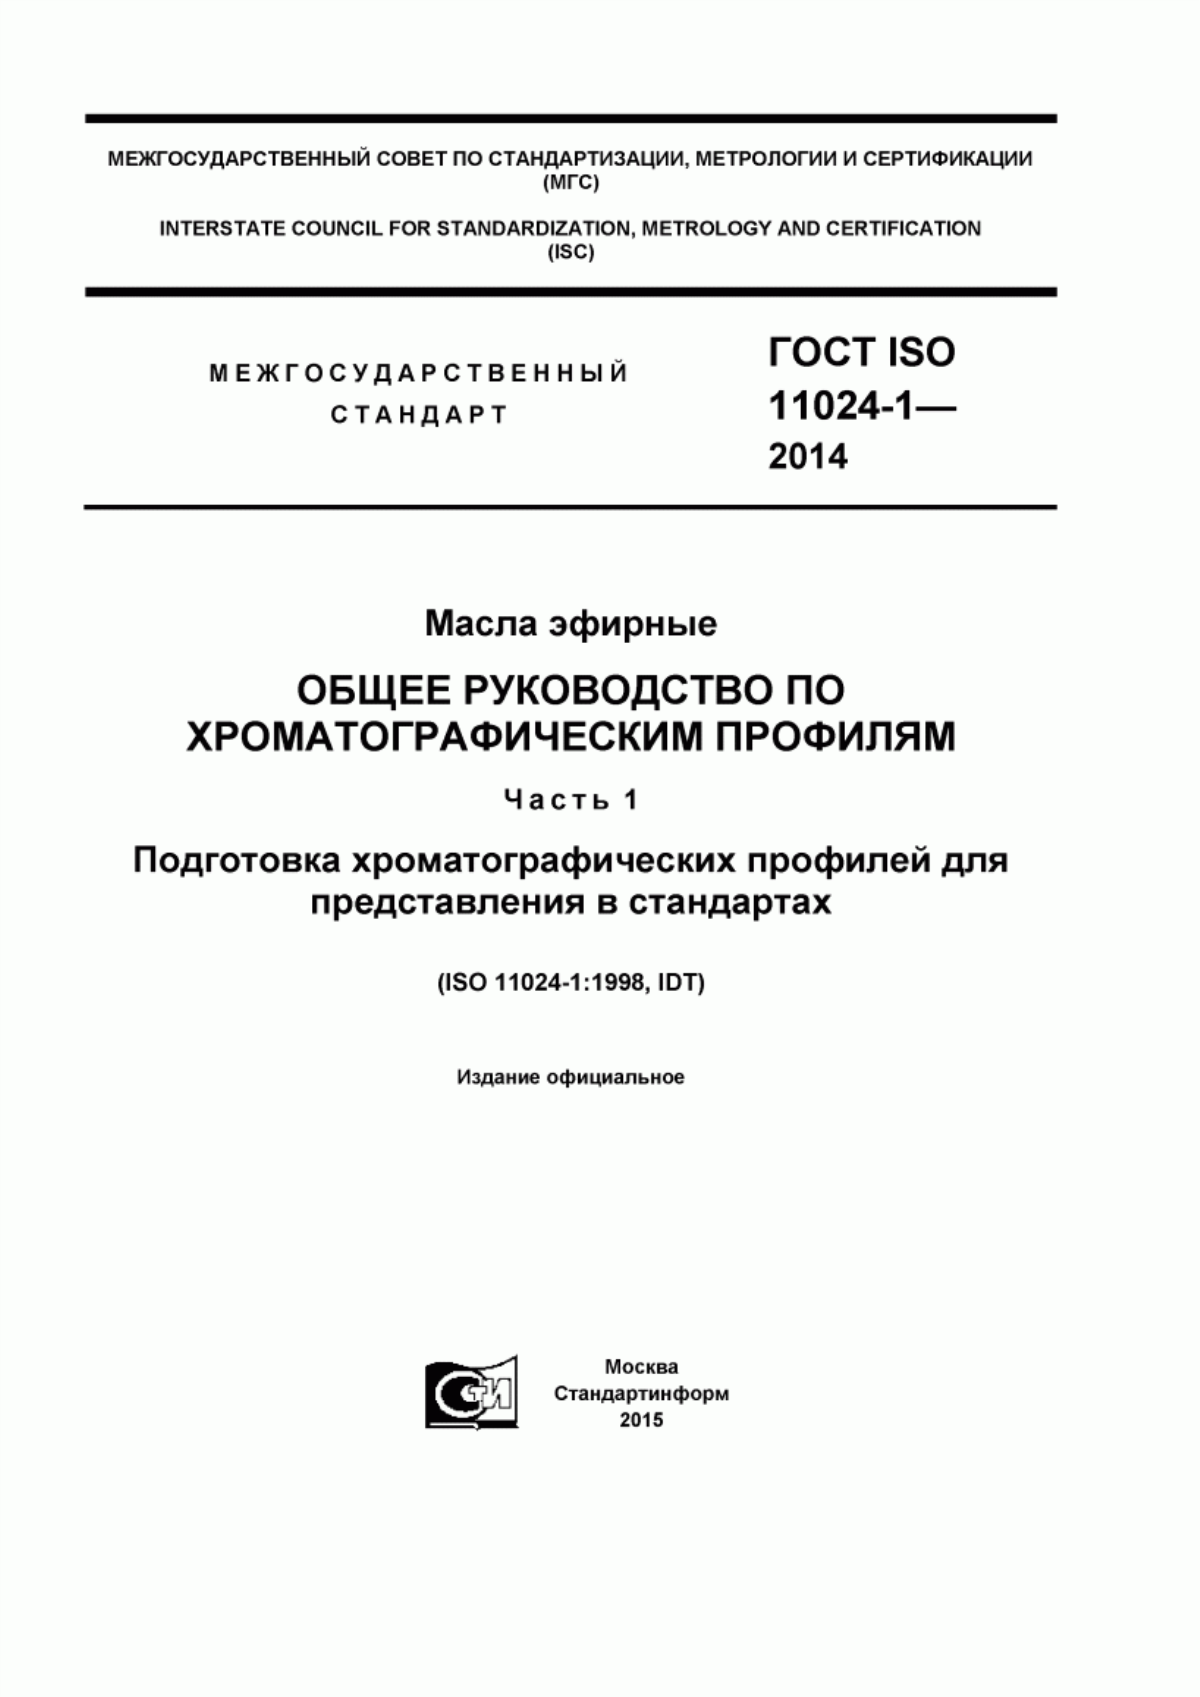 ГОСТ ISO 11024-1-2014 Масла эфирные. Общее руководство по хроматографическим профилям. Часть 1. Подготовка хроматографических профилей для представления в стандартах